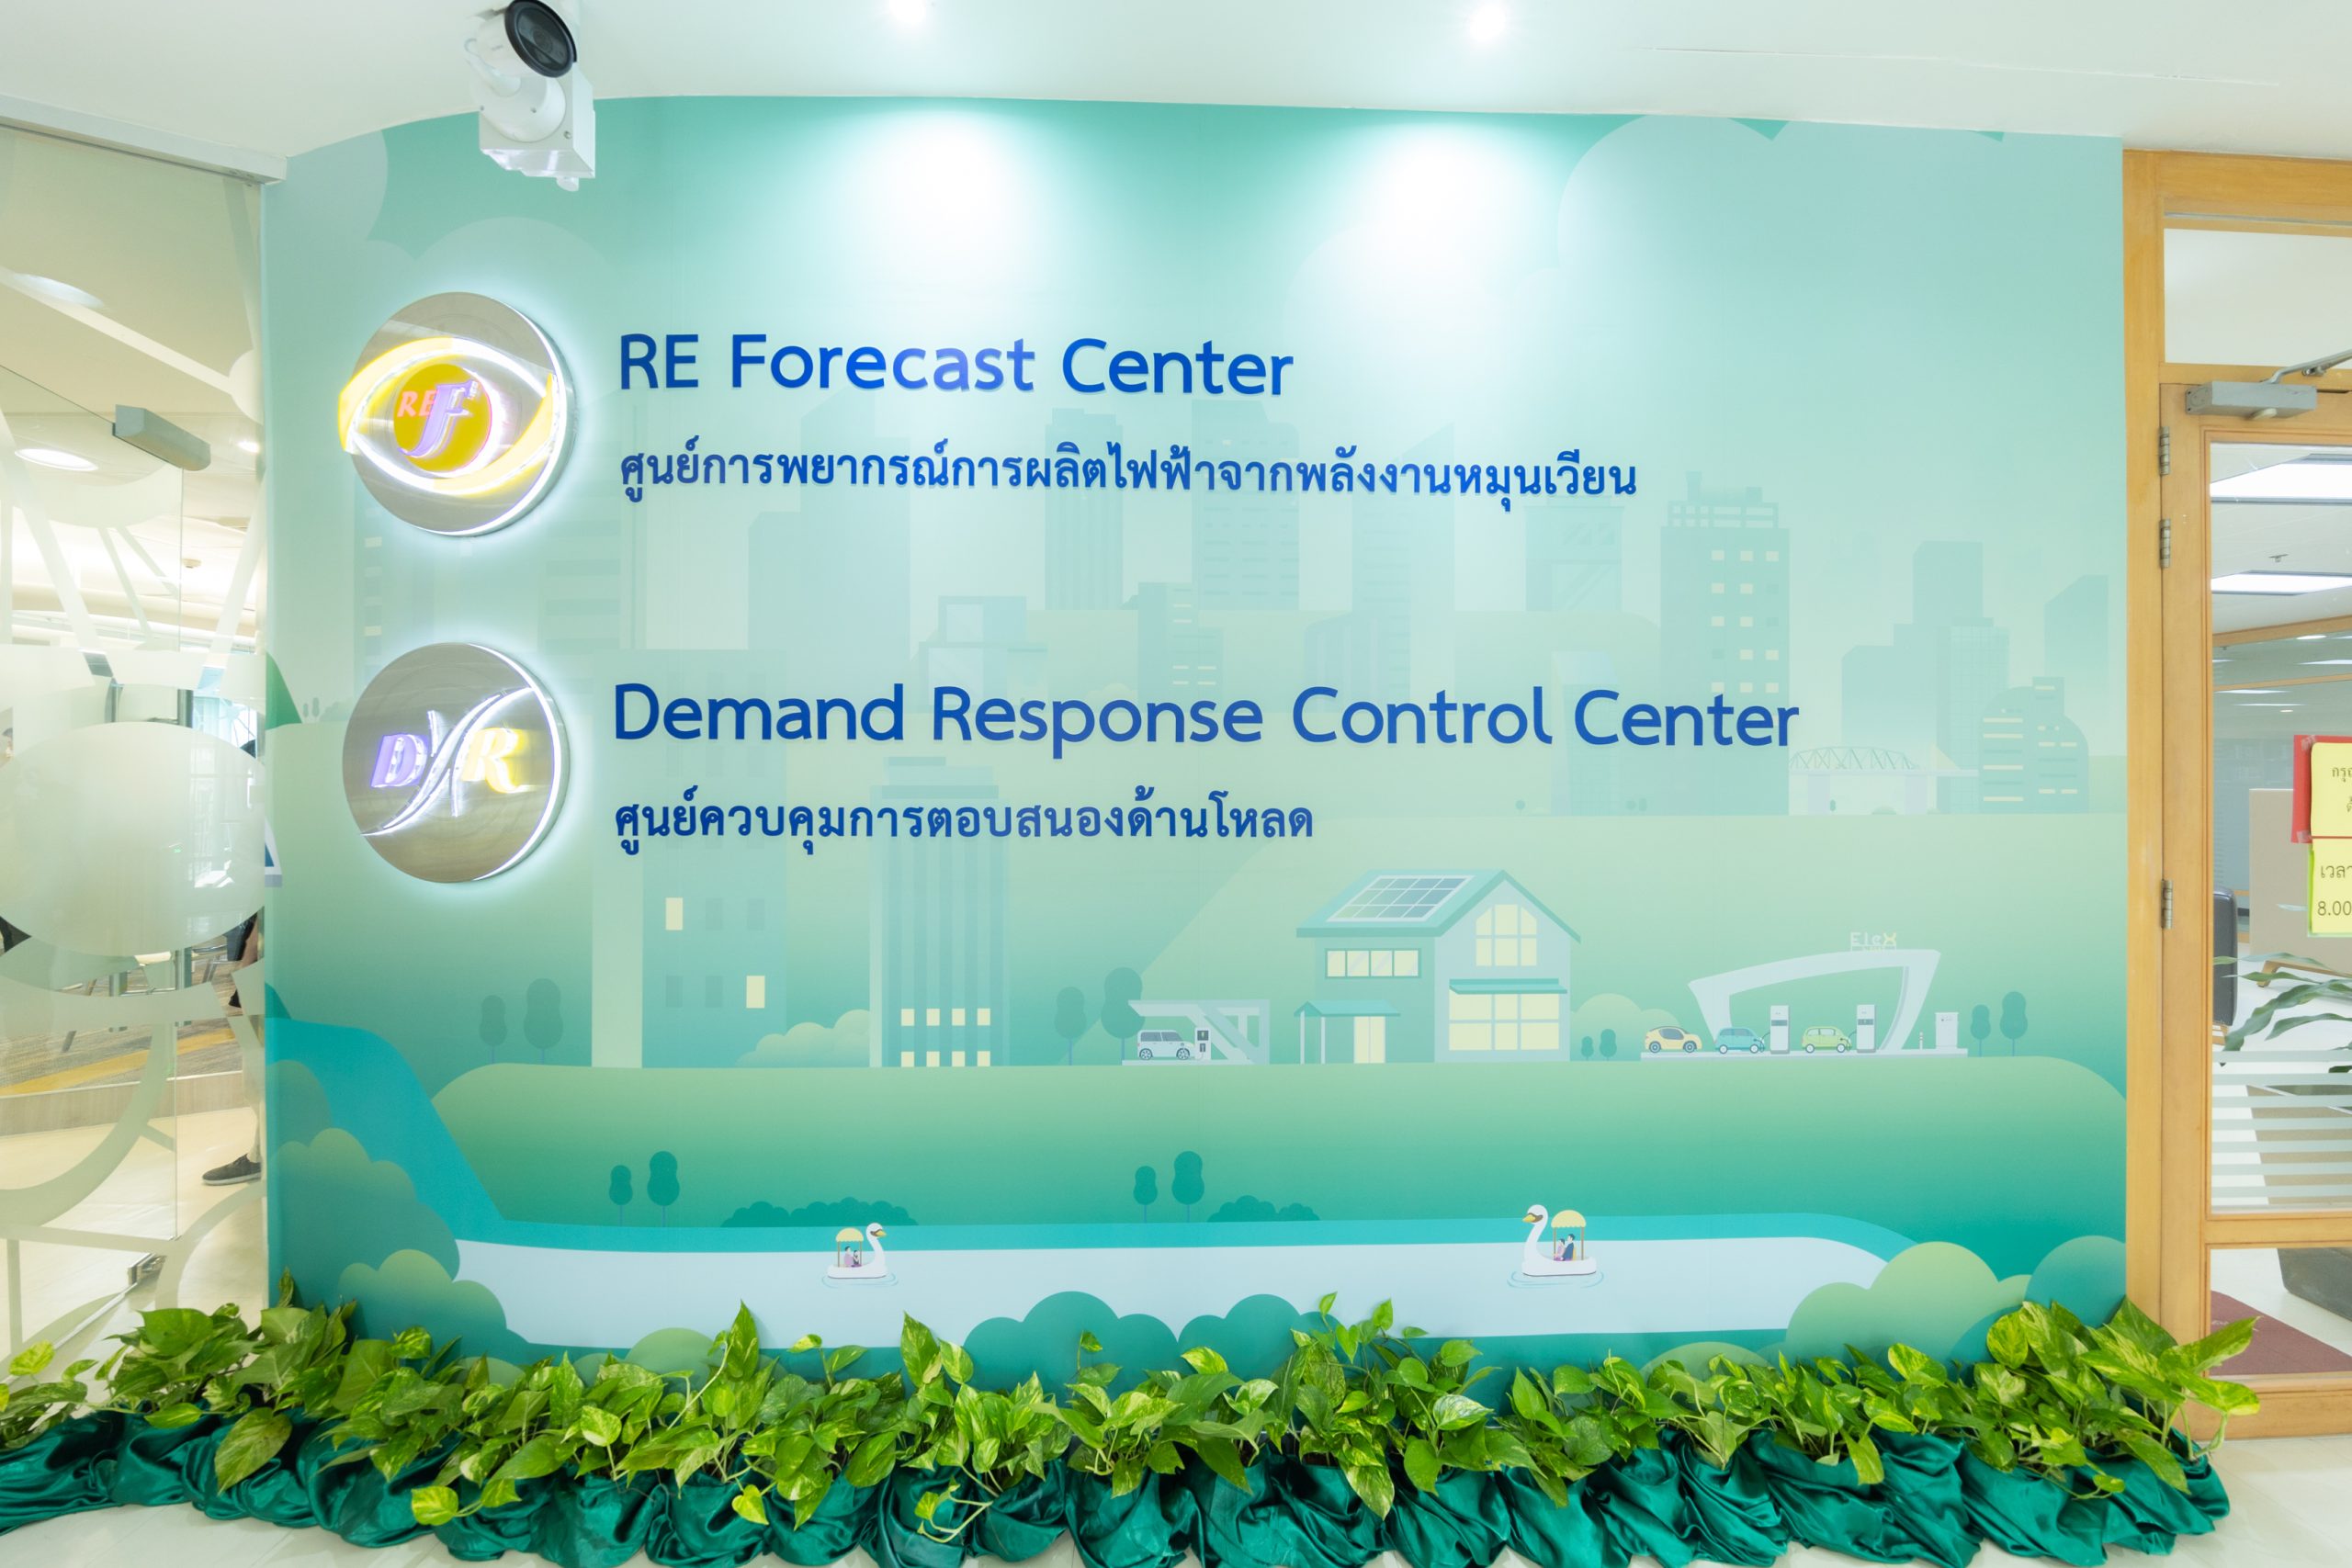 “可再生能源发电量预测中心及负载响应控制中心”作为“重要助力”推动泰国电力系统升级，实现可持续稳定发展